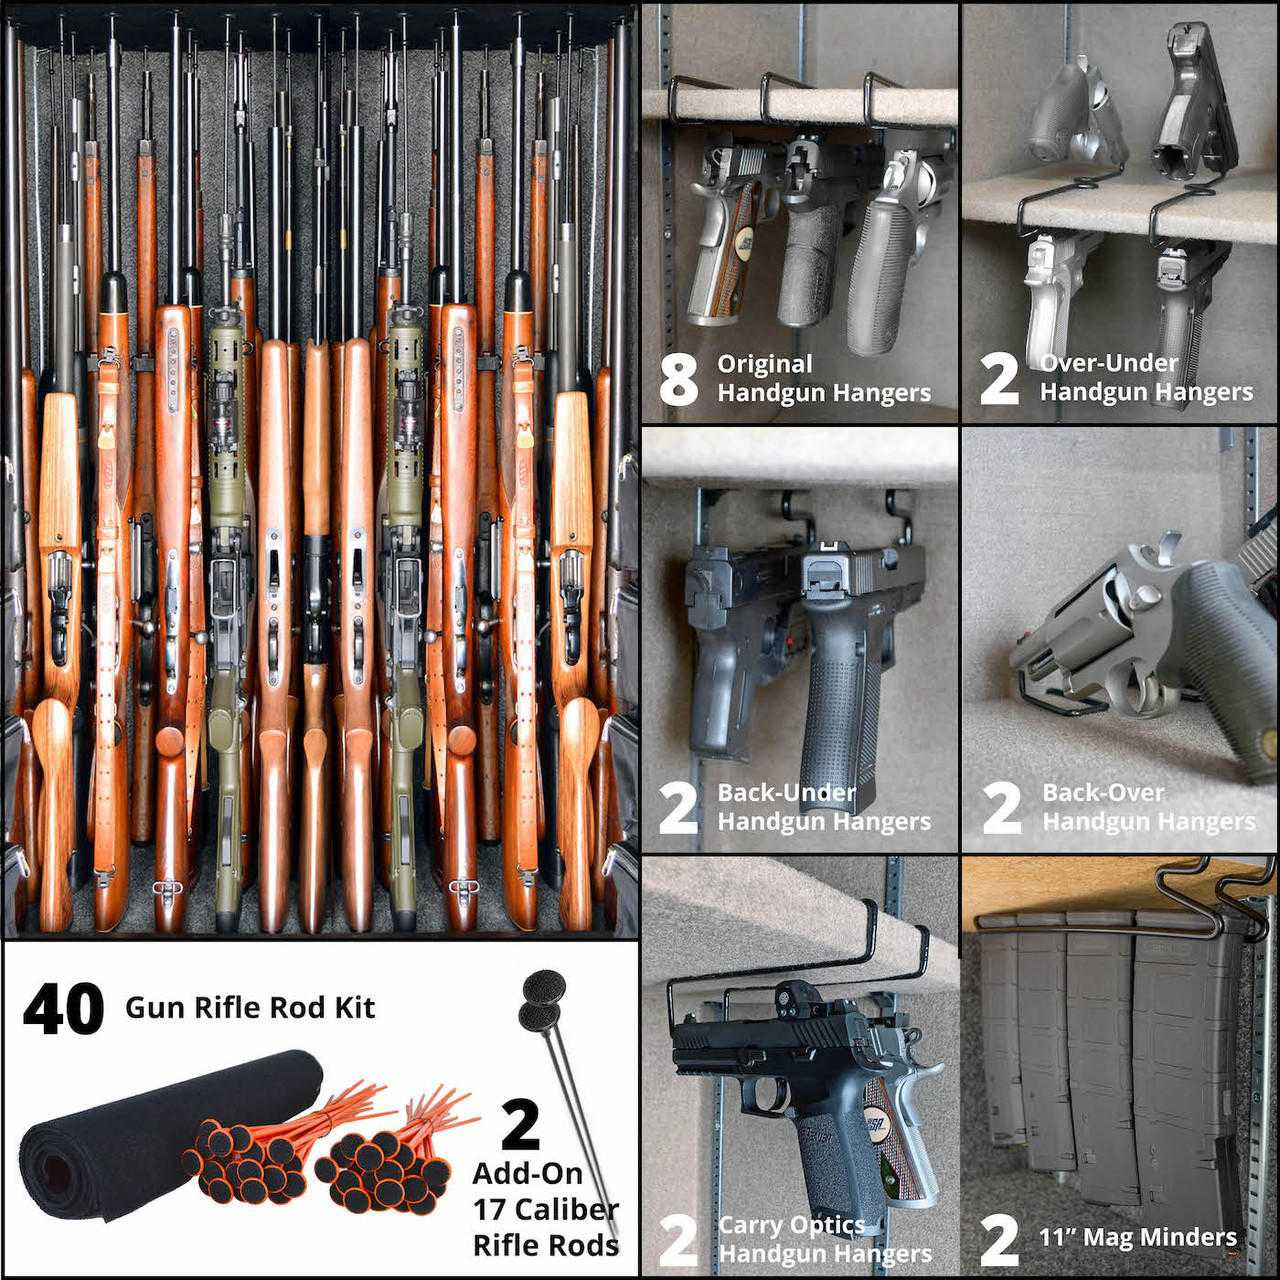 Safe Gun Storage Options - Gun Violence Prevention